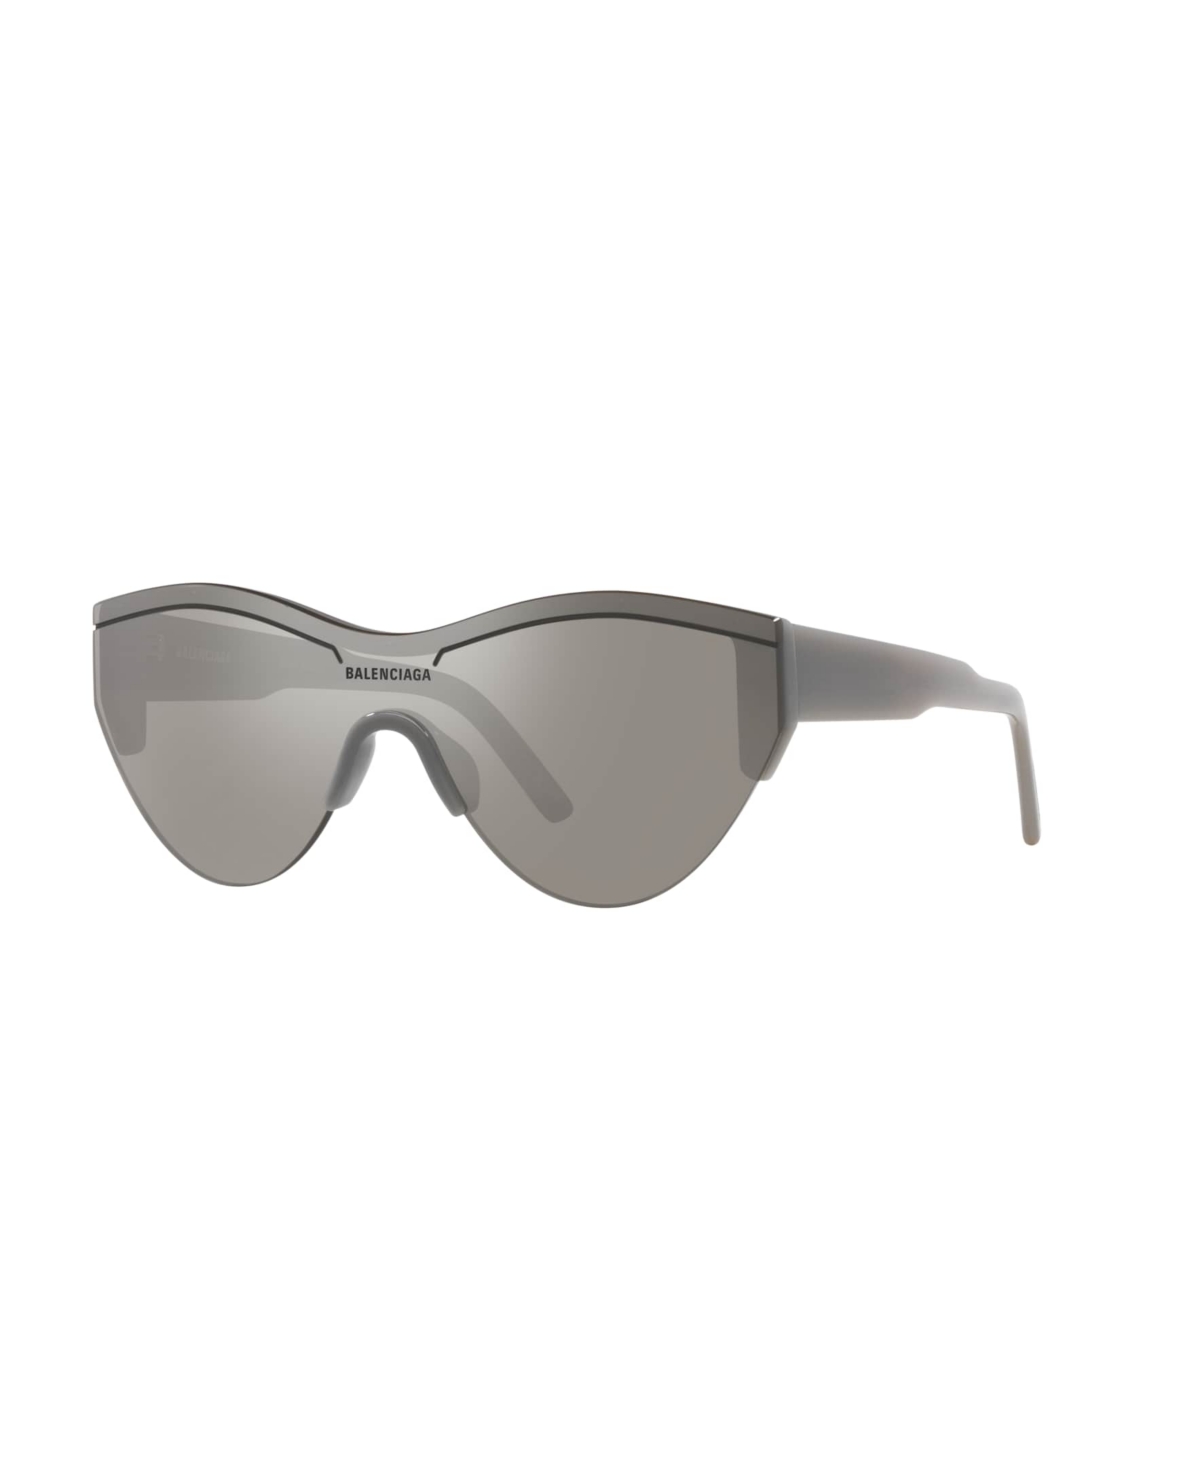 Balenciaga Unisex Sunglasses, Bb0004s 6e000185 In Gray